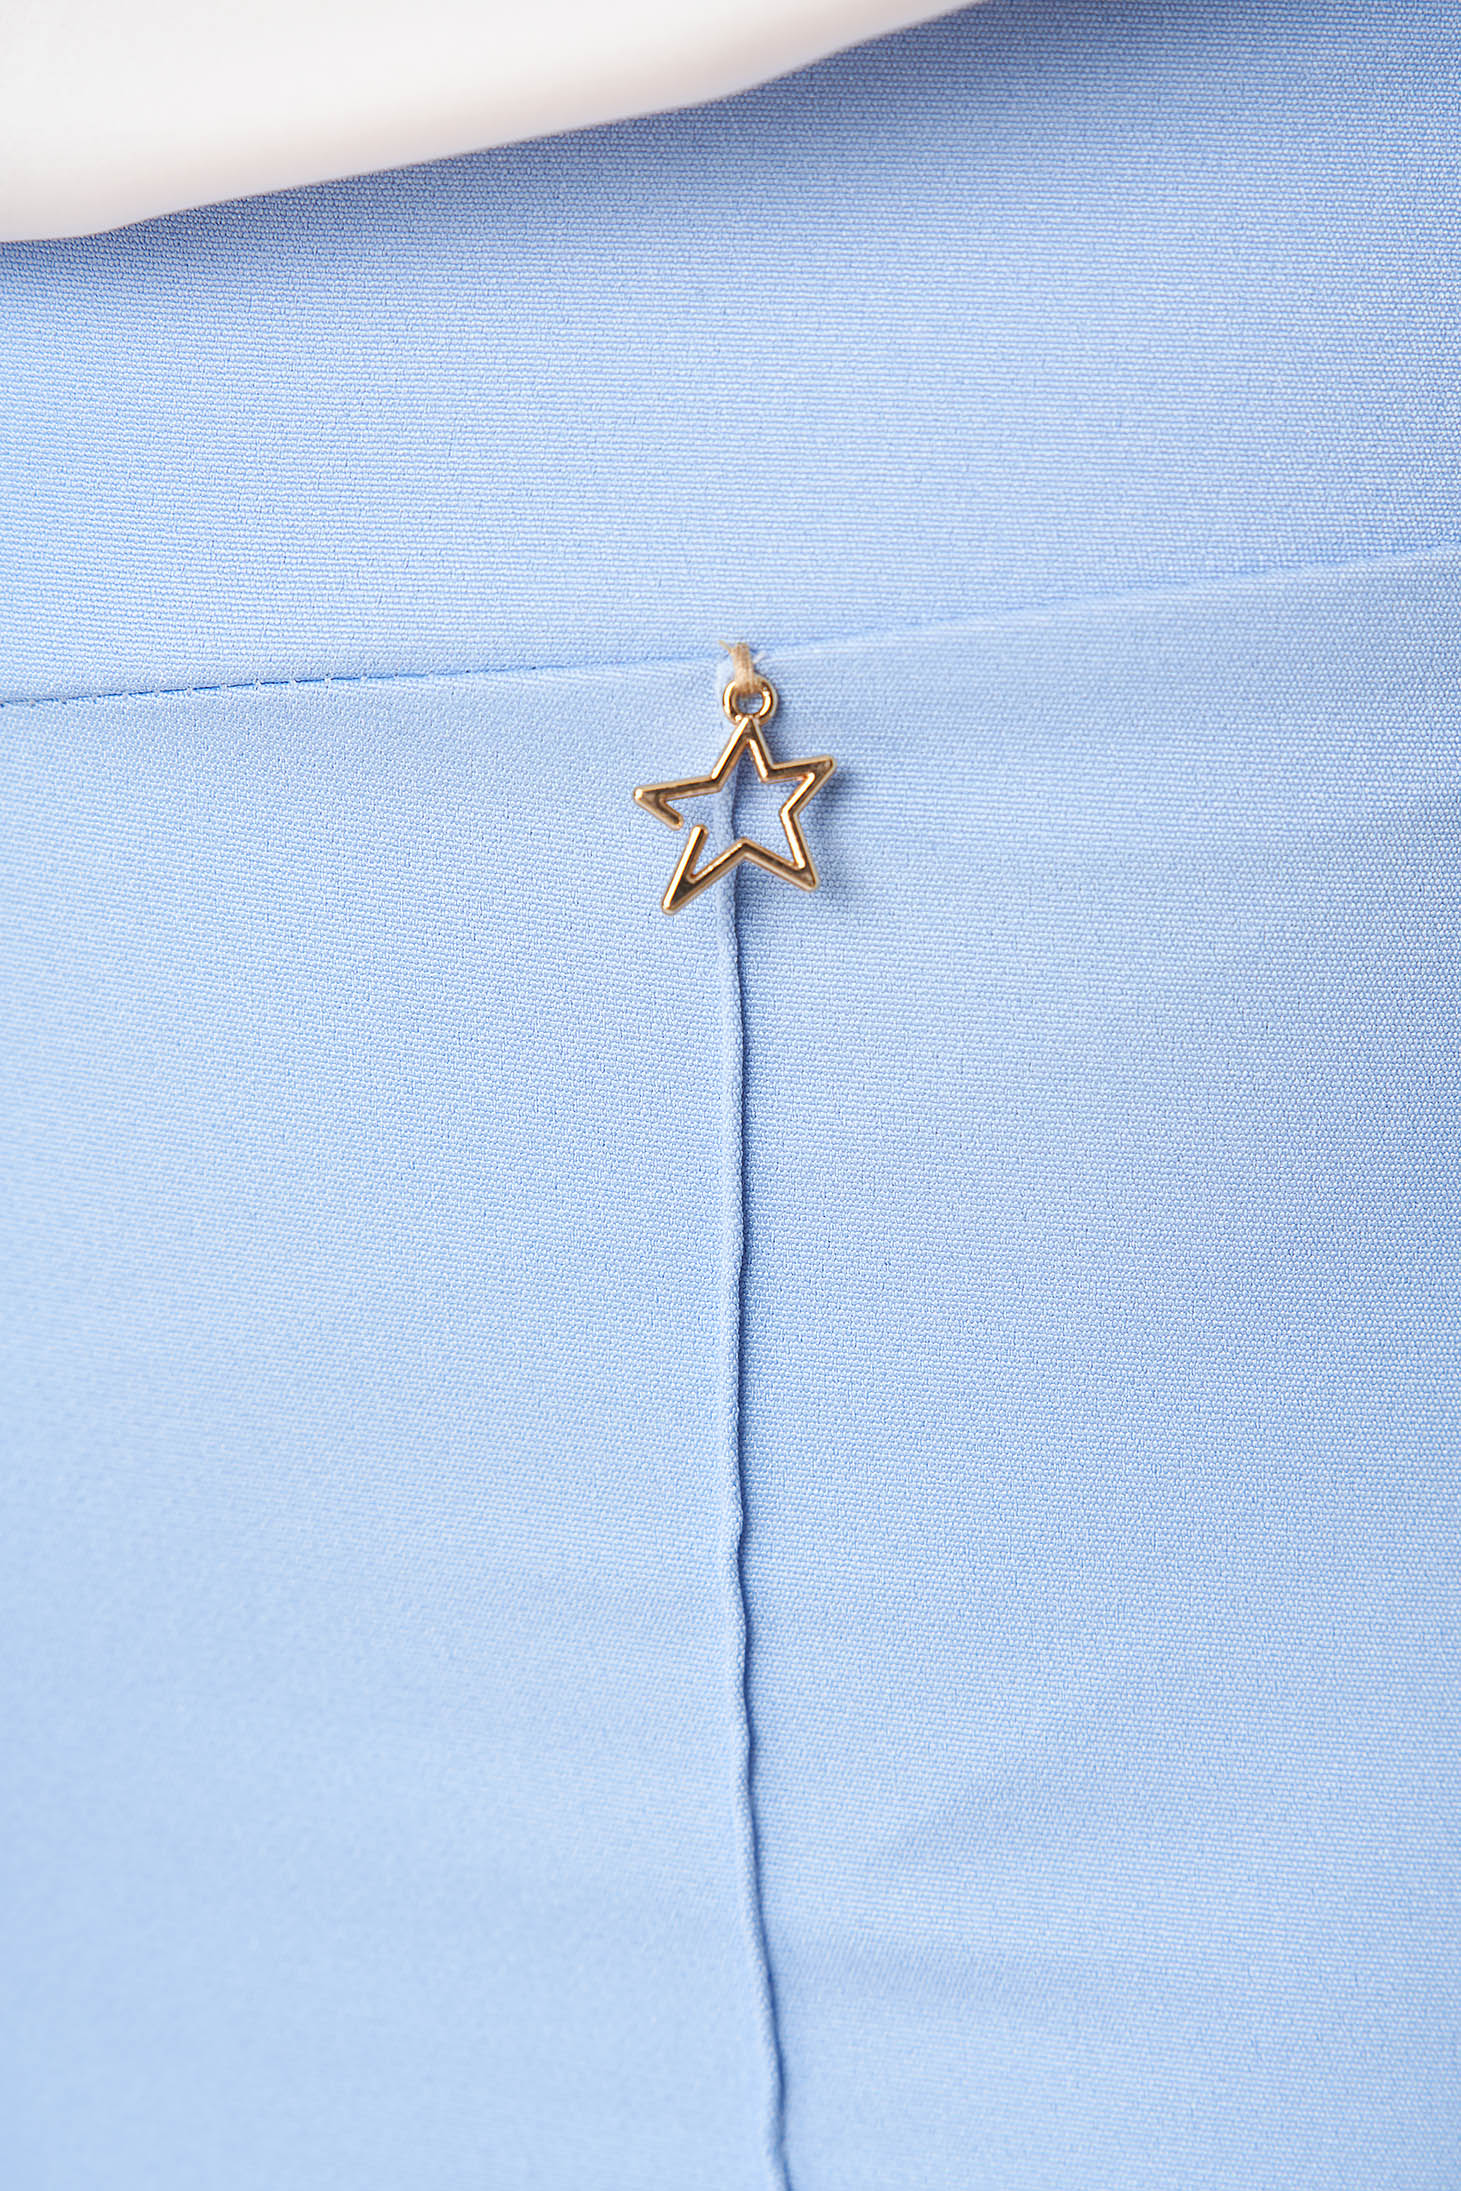 Világoskék hosszú magas derekú bővülő nadrág enyhén rugalmas szövetből - StarShinerS 6 - StarShinerS.hu